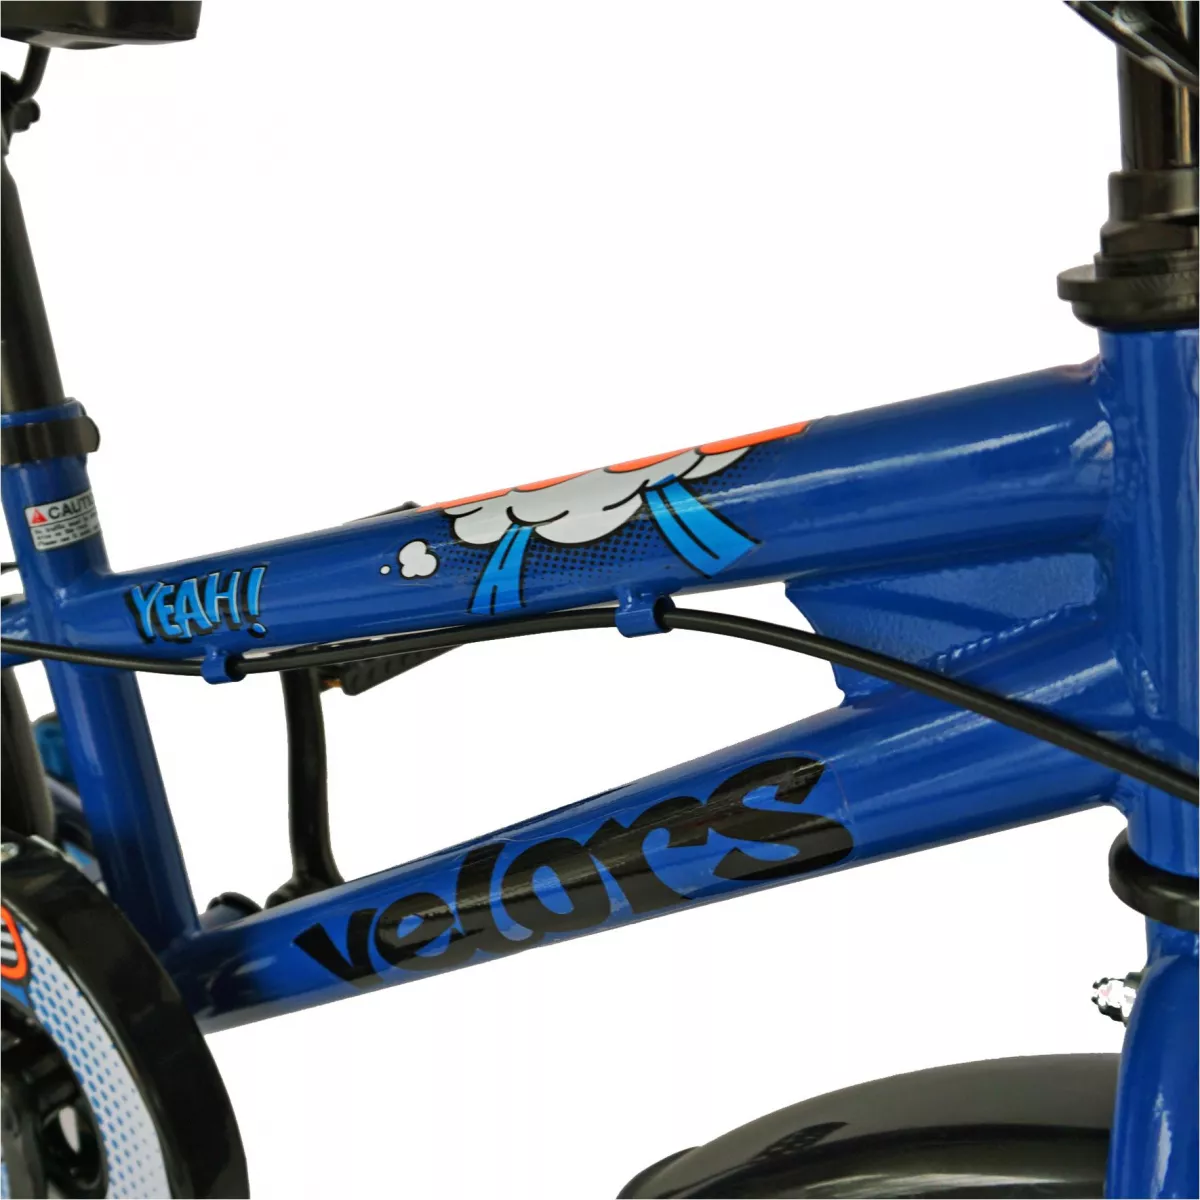 Bicicleta baieti VELORS V1401A, roata 14", C-Brake, roti ajutatoare, 3-5 ani, albastru/negru 